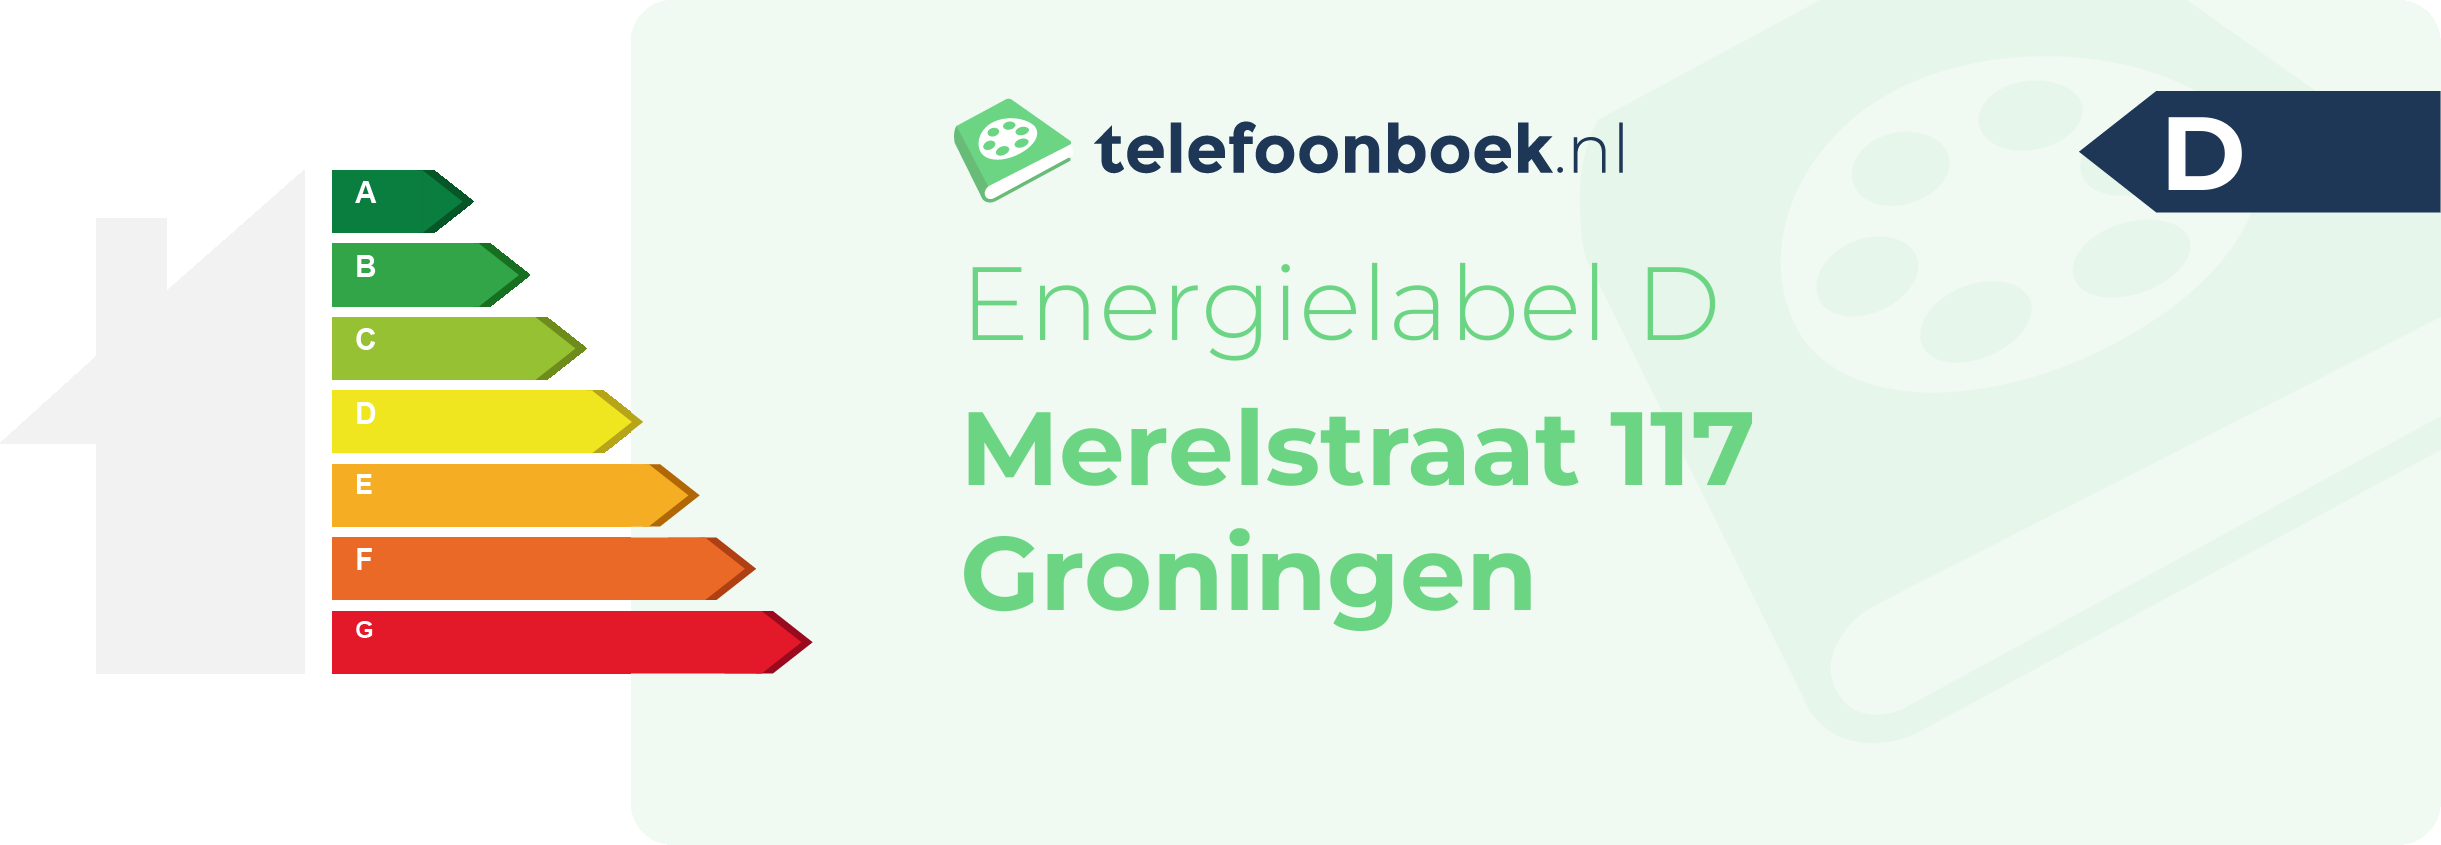 Energielabel Merelstraat 117 Groningen